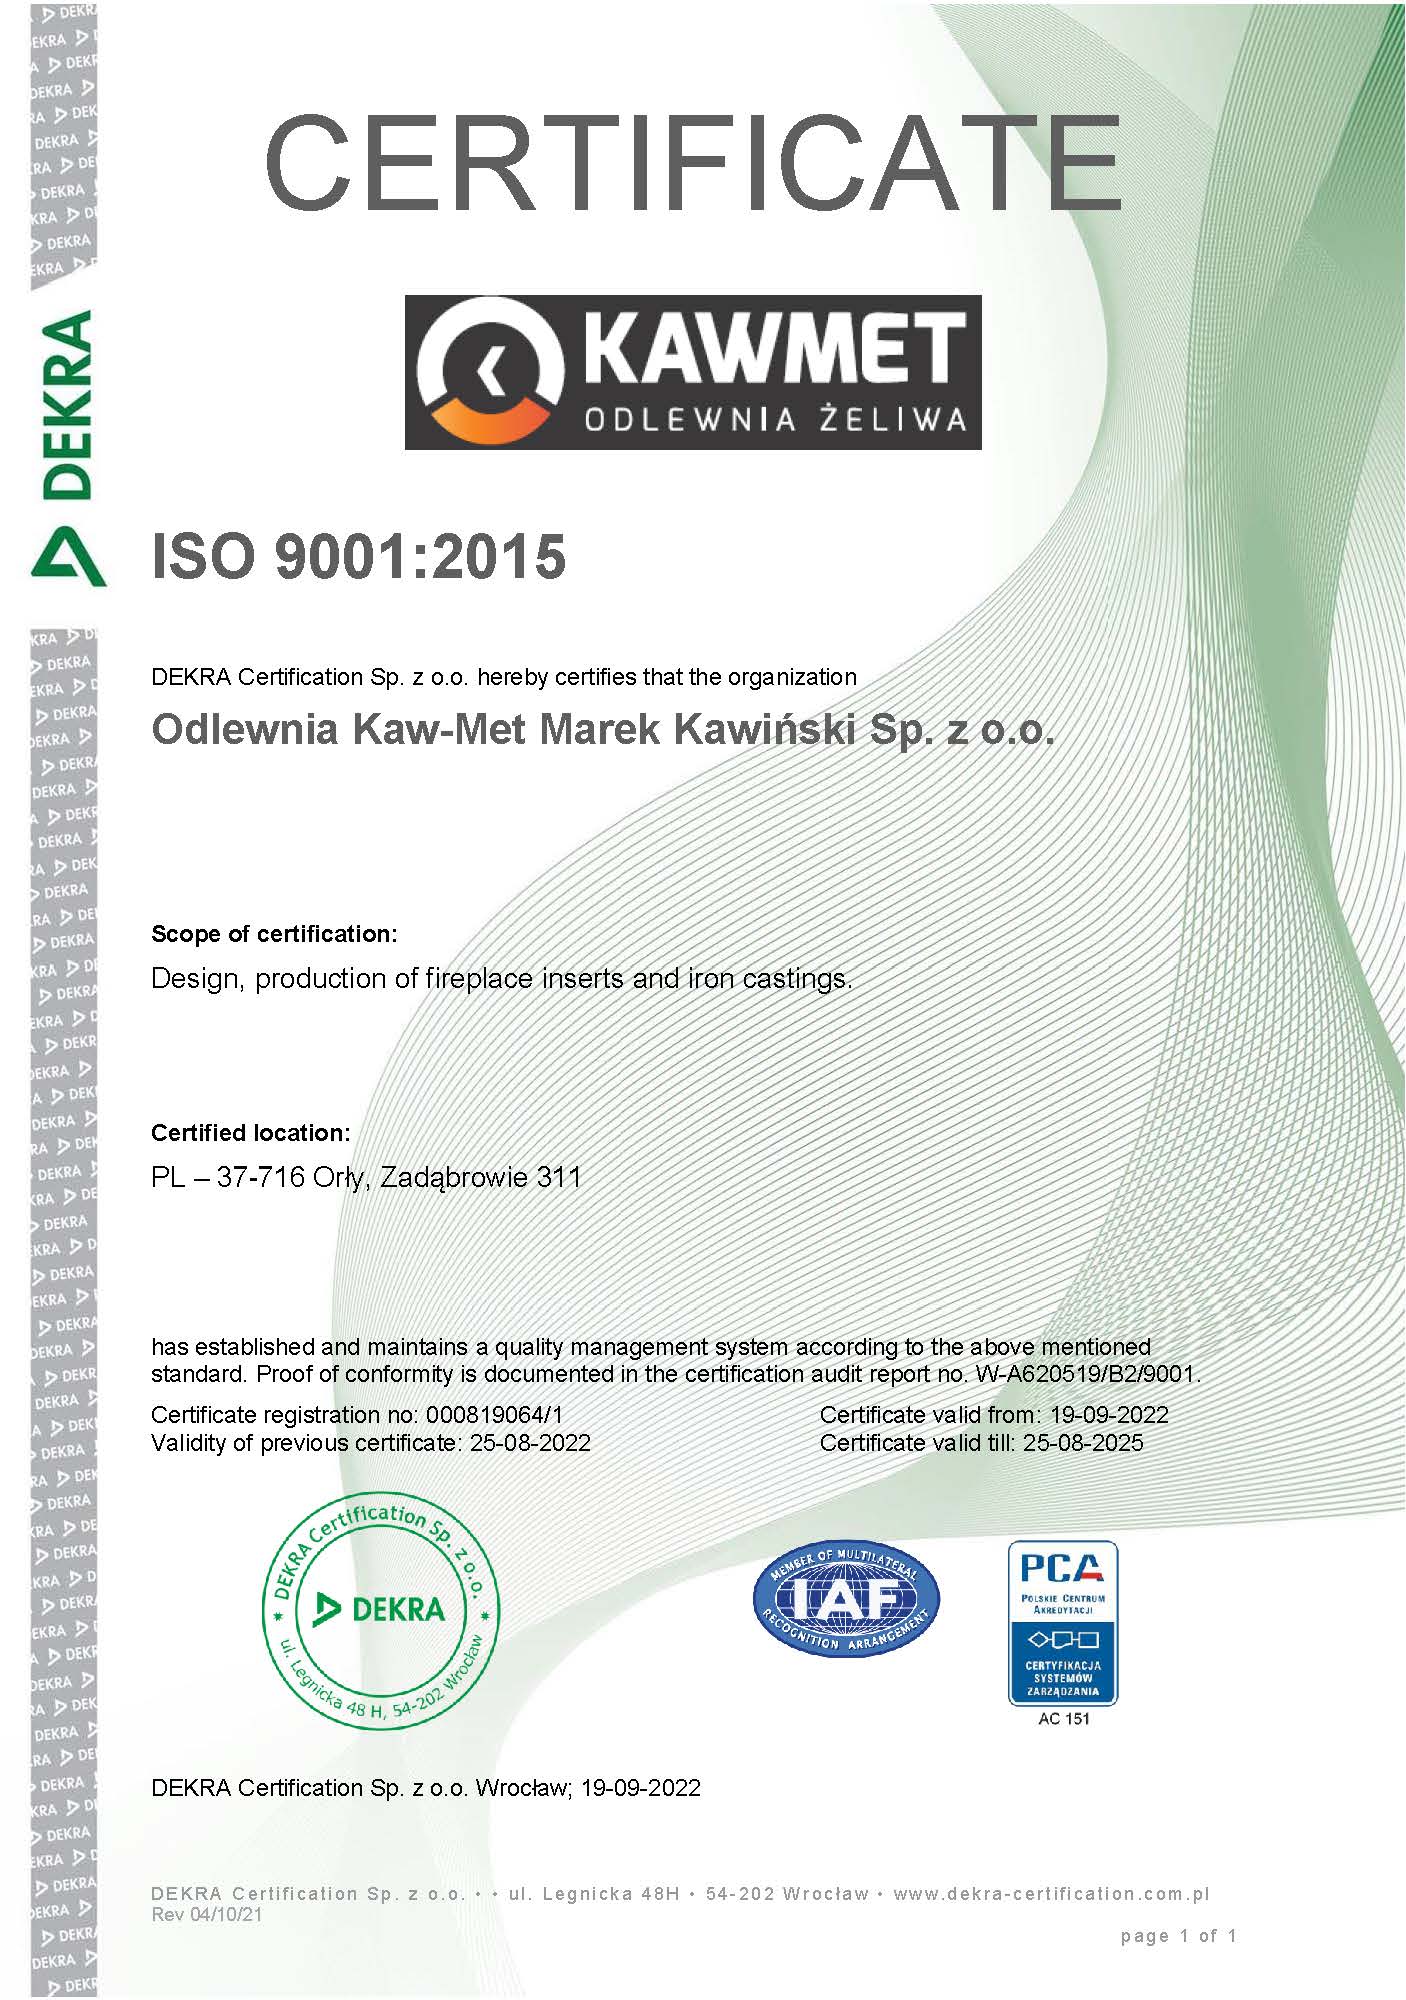 CERTIFICATE ISO KAWMET EN_9001_PCA.jpg